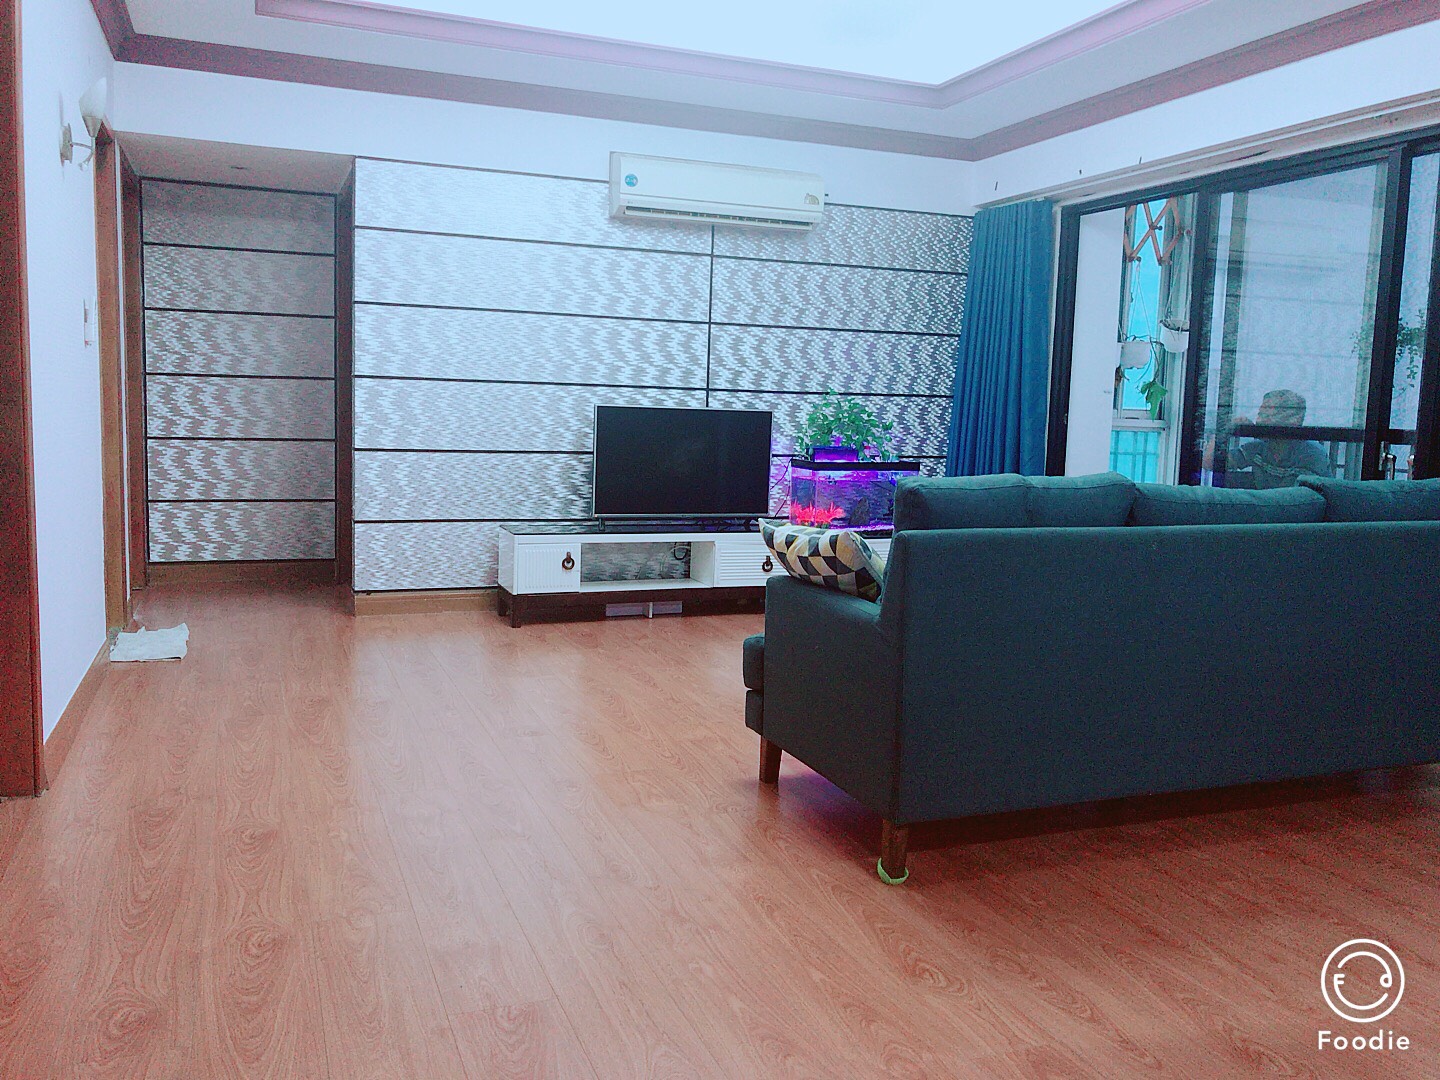 Cho thuê CH Cantavil An Phú quận 2, 75m2, 2 phòng ngủ, ban công thoáng, giá rẻ nhất 13.5 triệu.